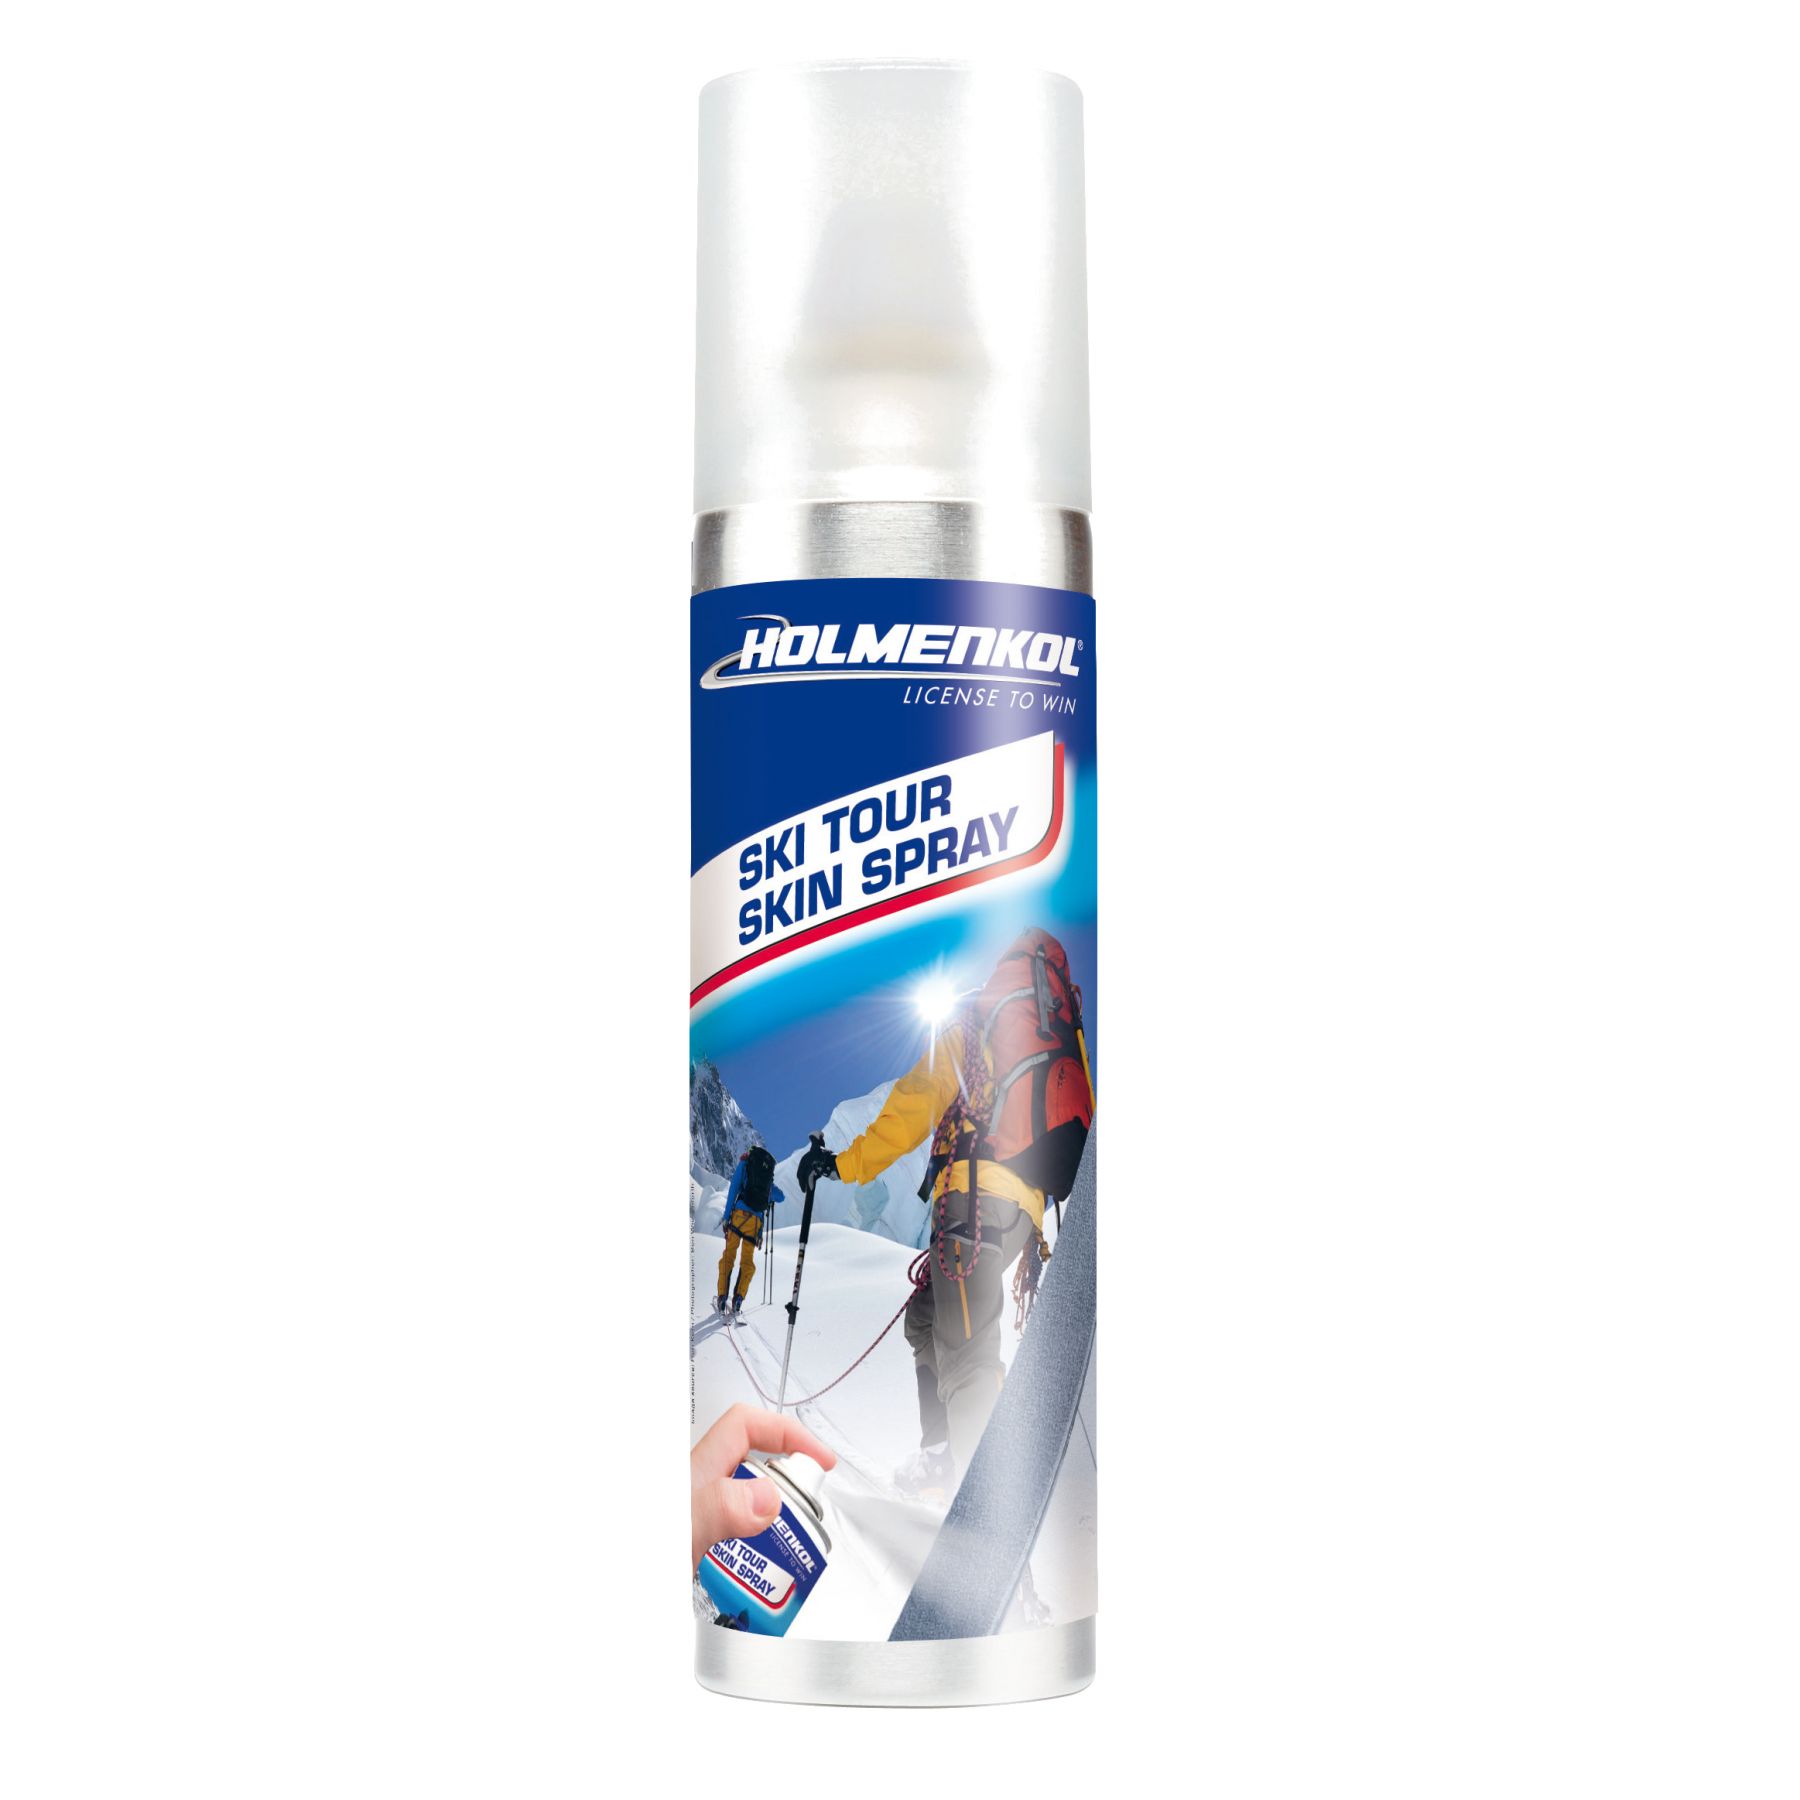 Brug Holmenkol Ski Tour Skin Spray, 125 ml til en forbedret oplevelse